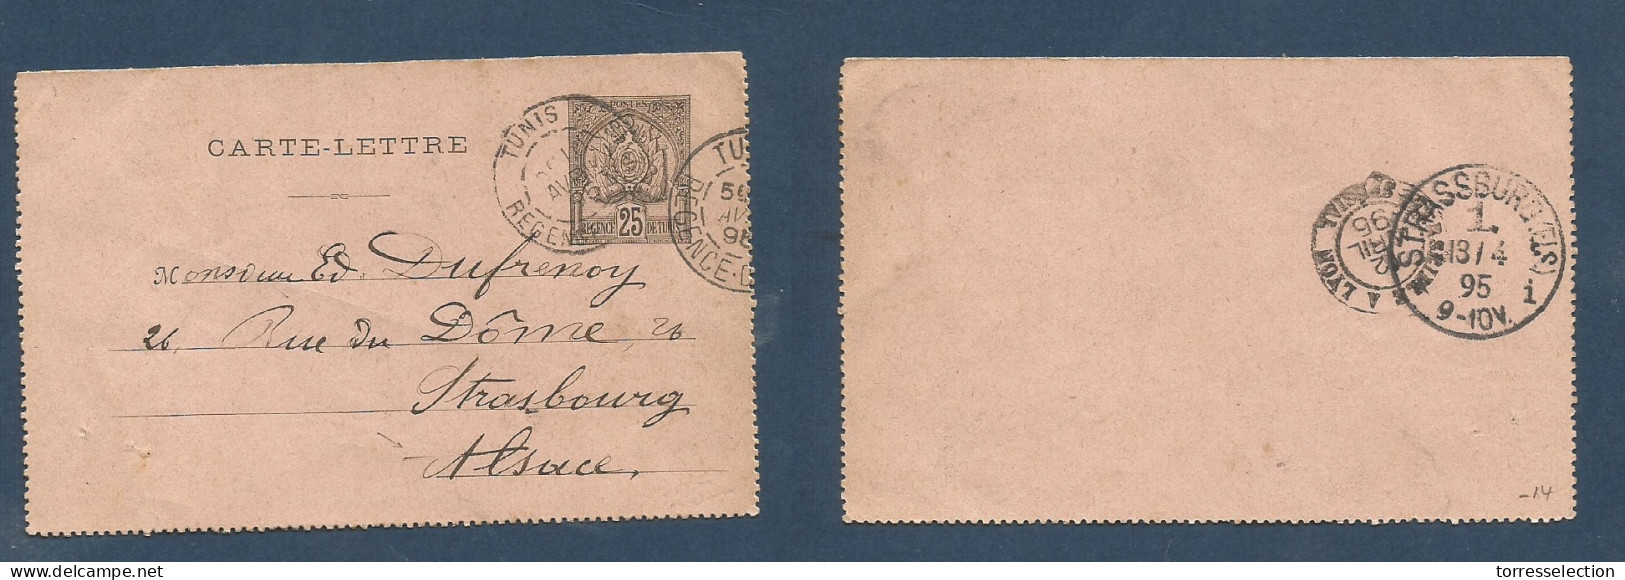 TUNISIA. 1895 (10 April) GPO - Alsace, Strassbourg (13 Apr) 25c Black Lettersheet. Fine Used. XSALE. - Tunisia